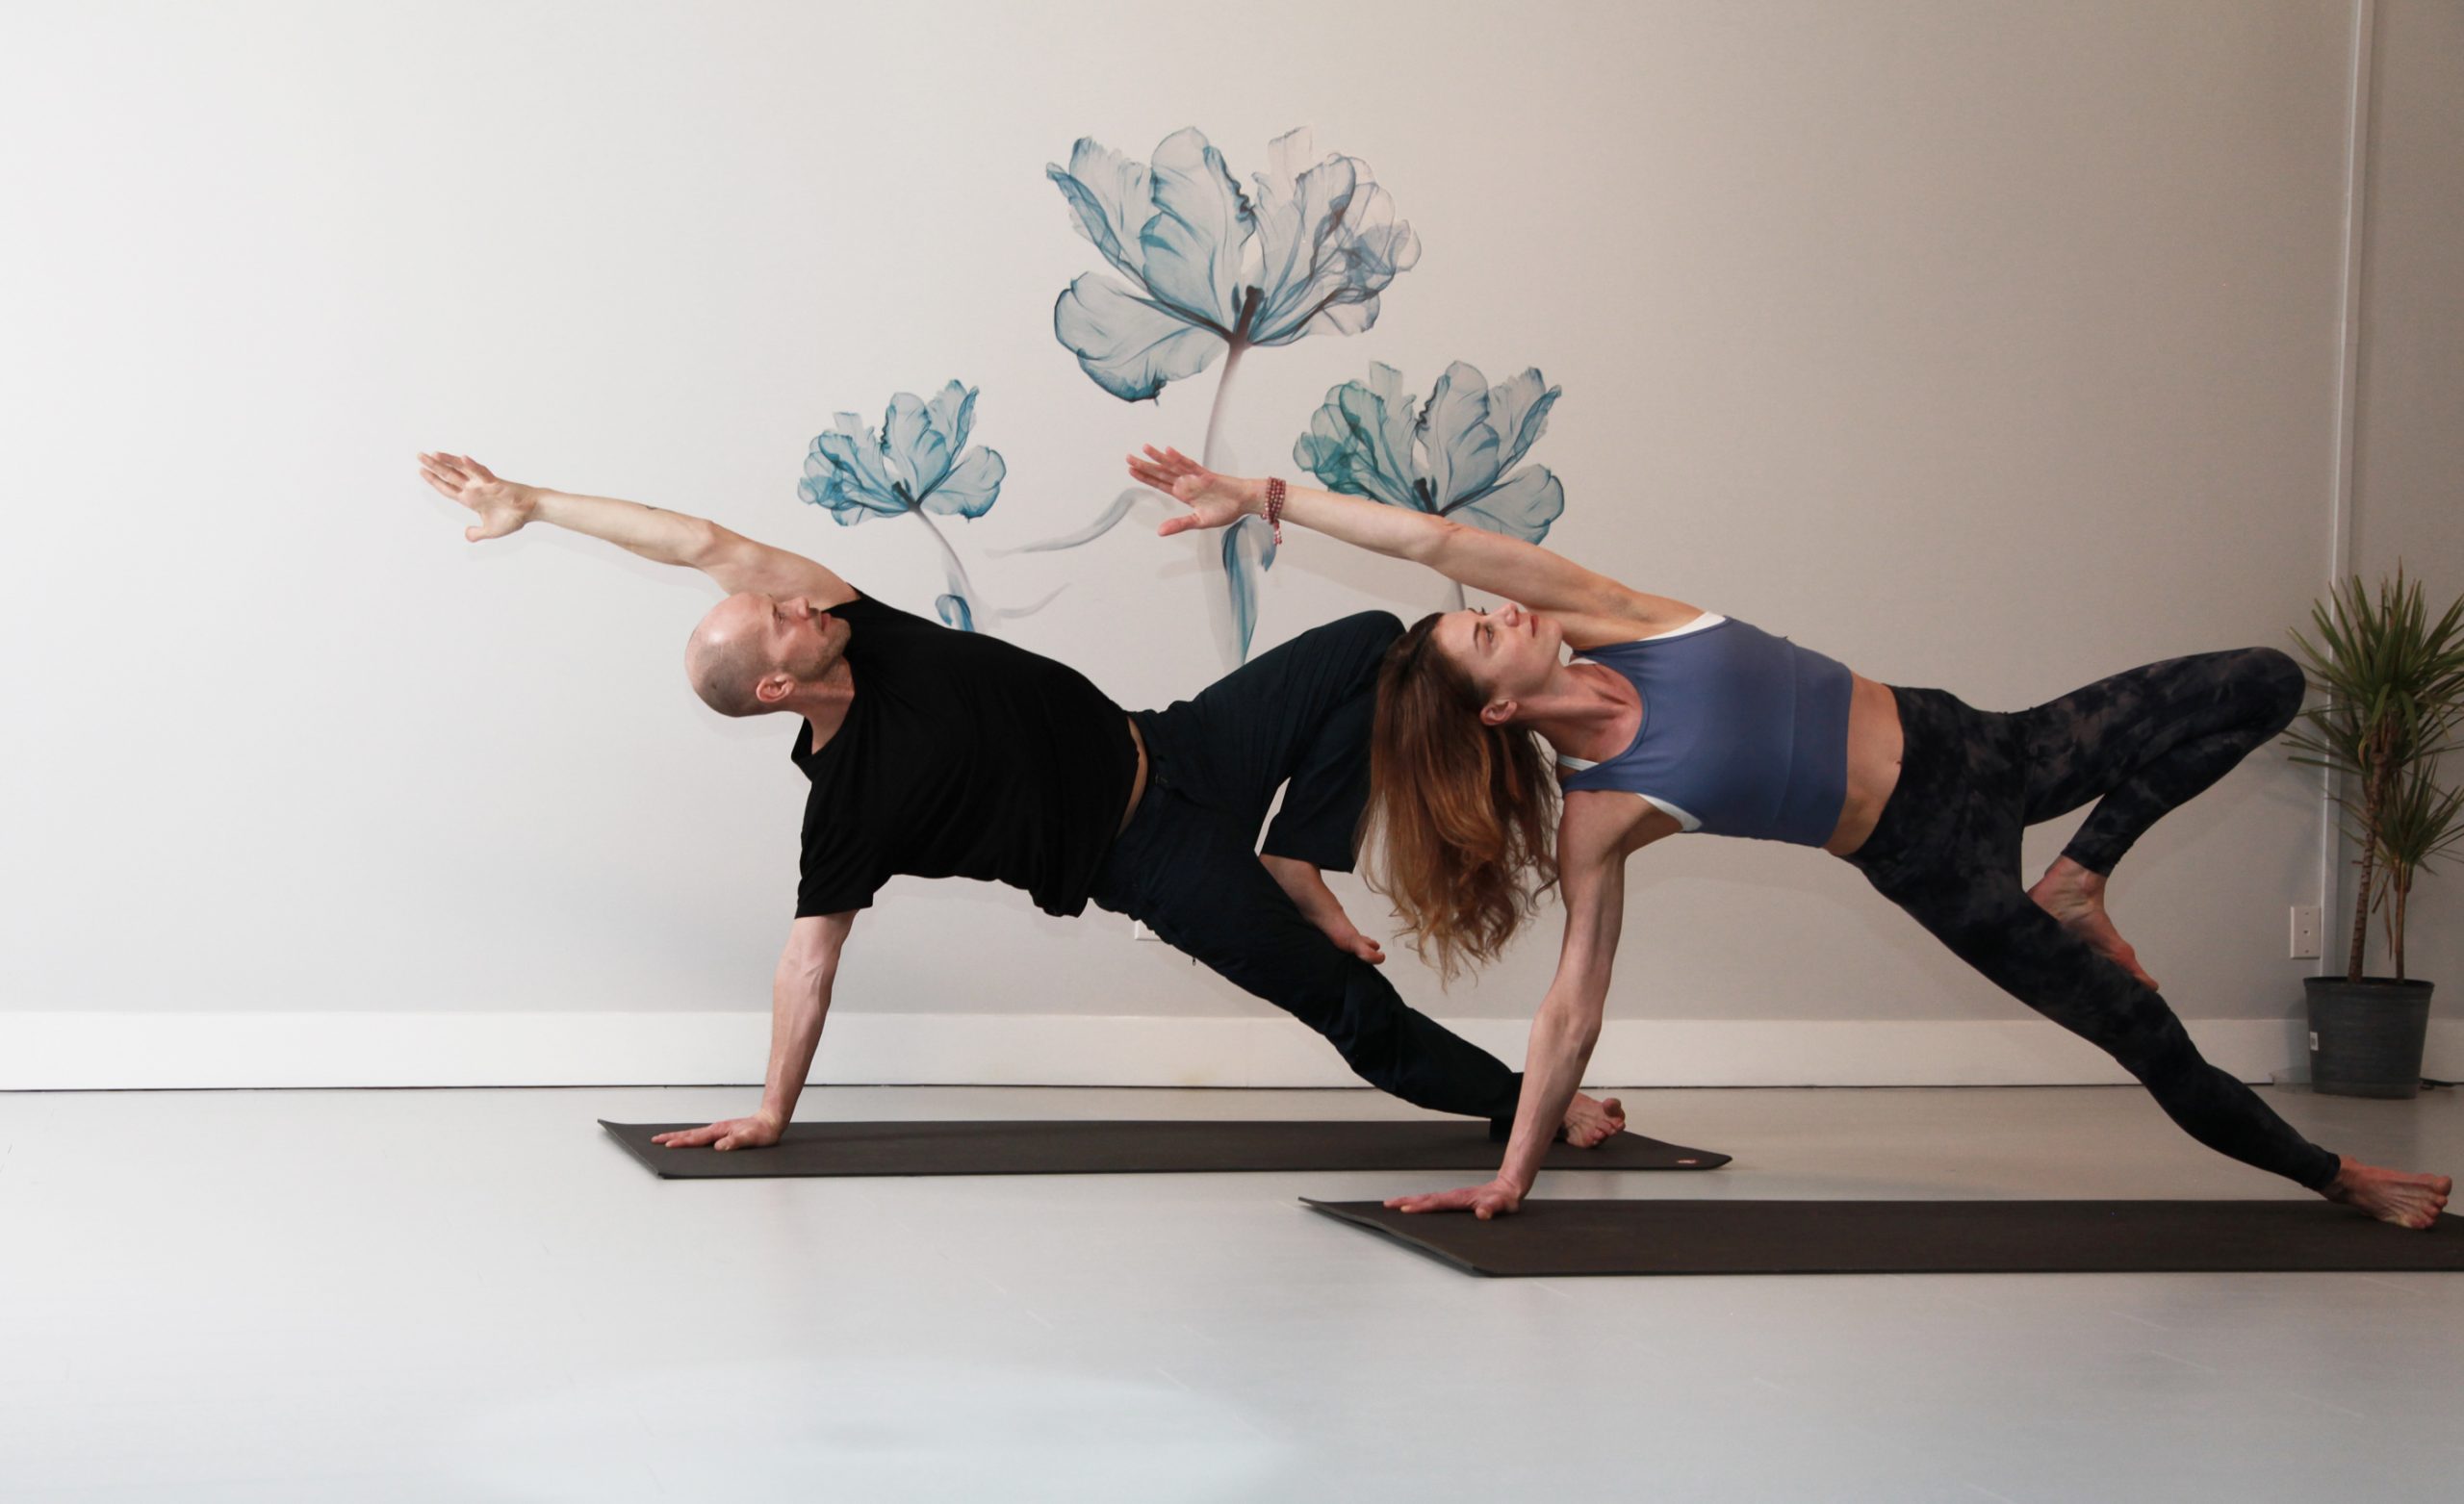 Prop Shop — CENTER Yoga + Wellness